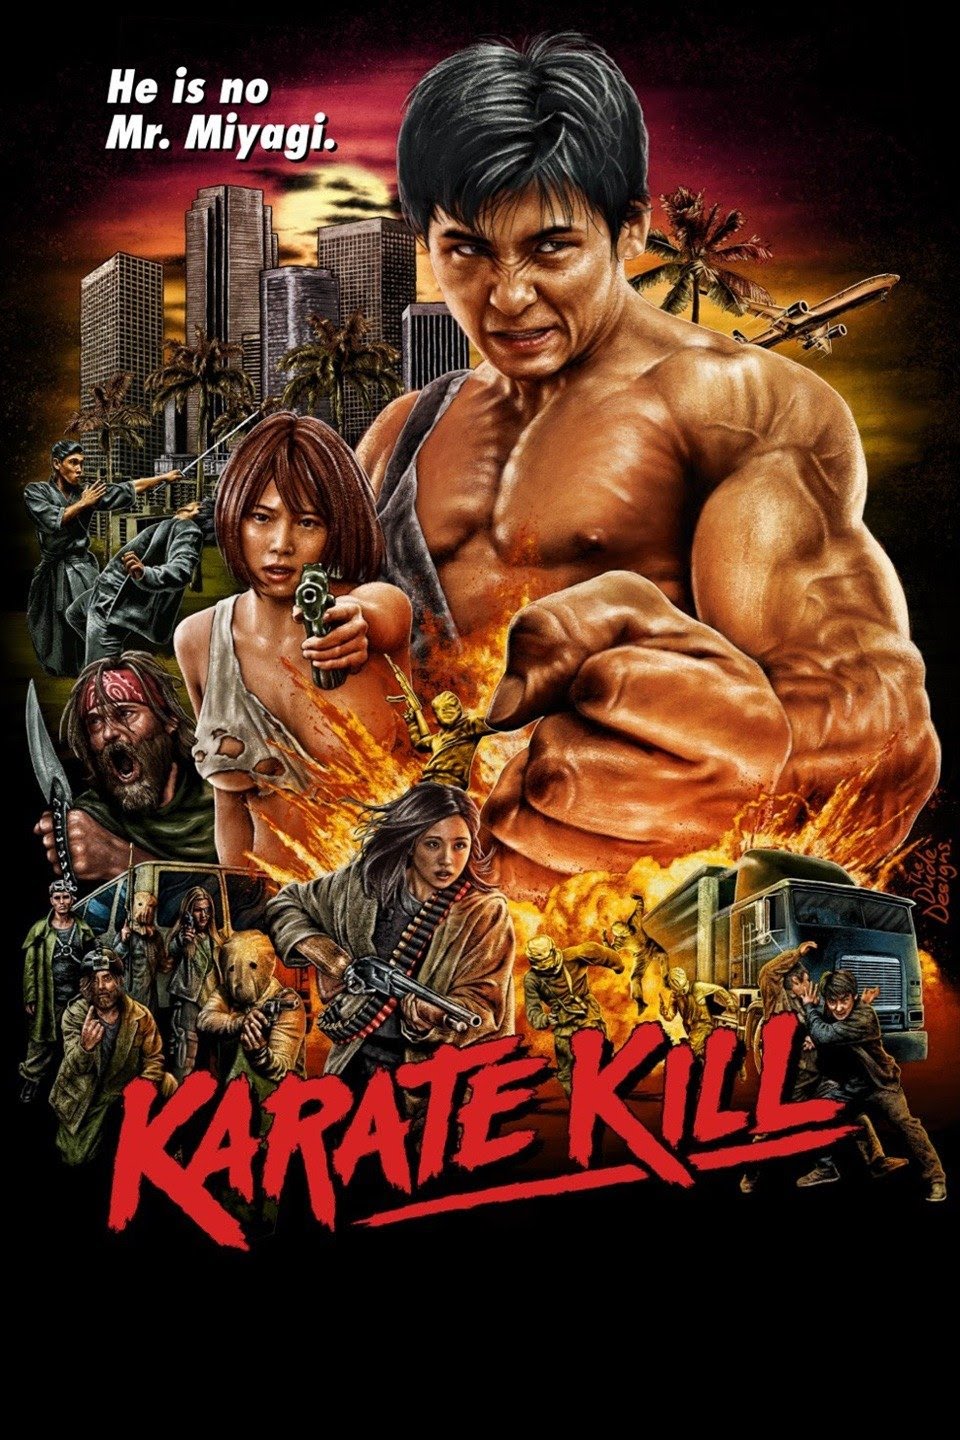 مشاهدة فيلم Karate Kill (2016) مترجم